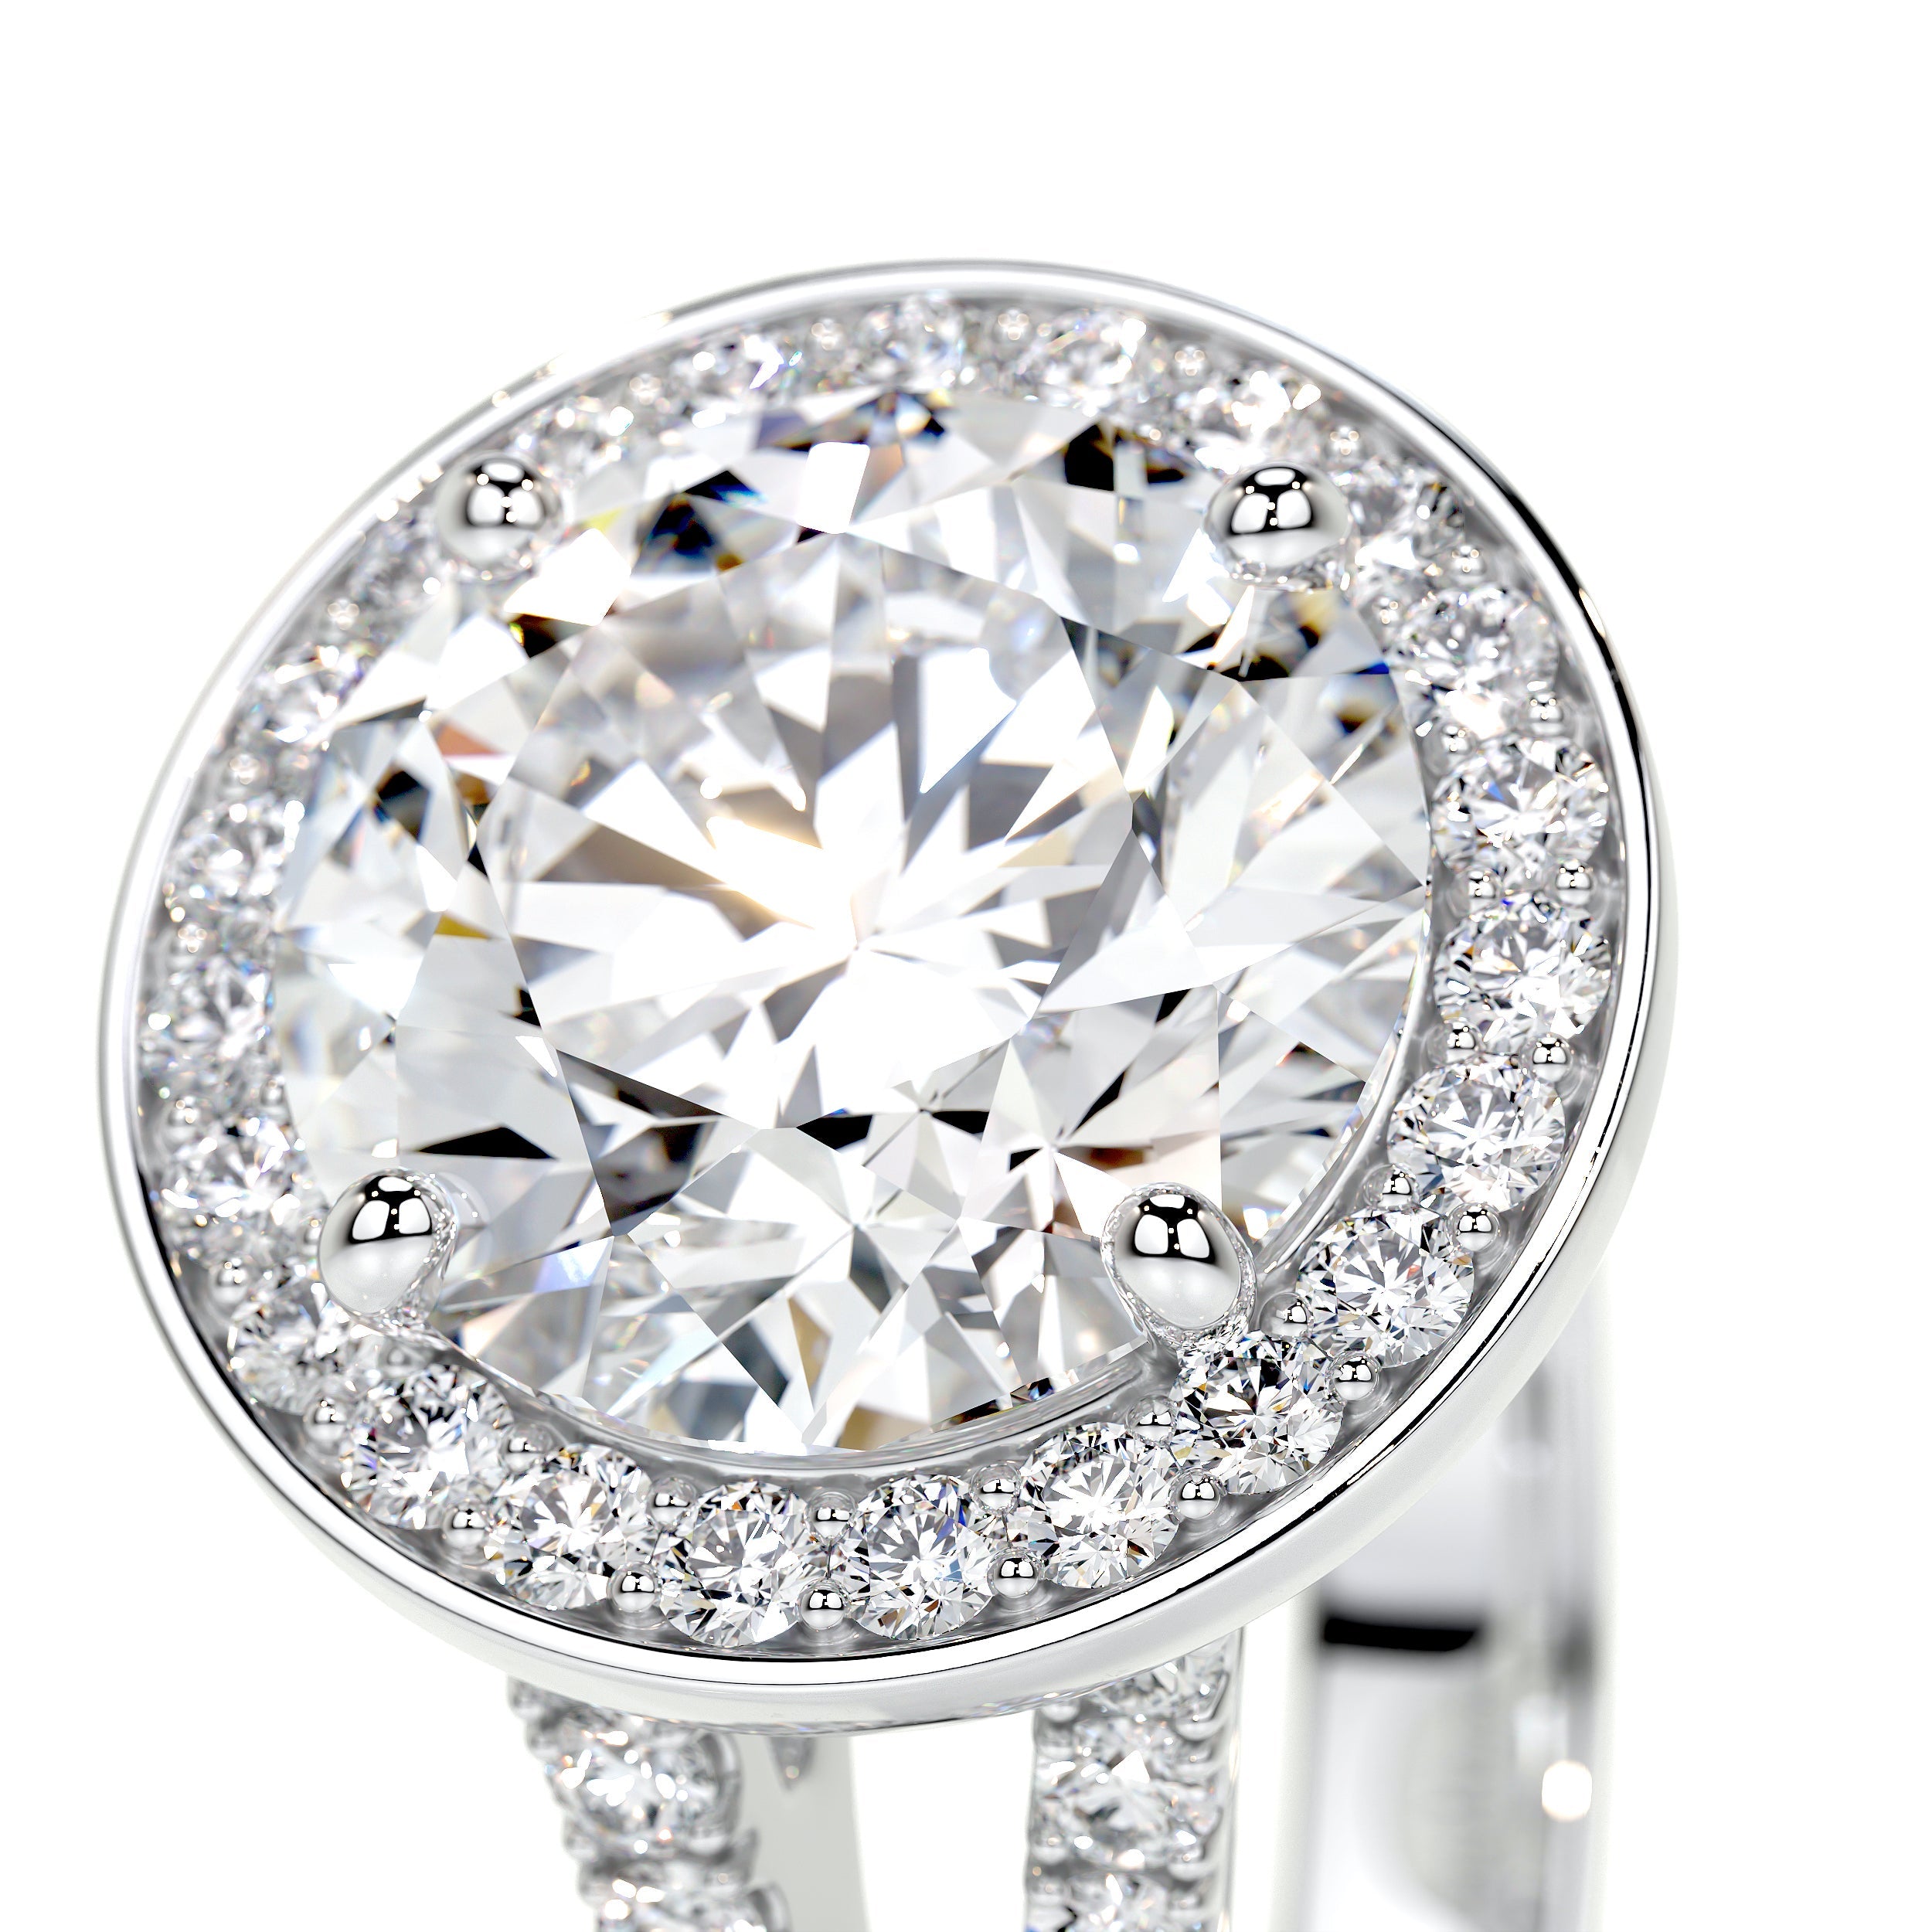 Camilla Lab Grown Diamond Ring   (2.75 Carat) -18K White Gold